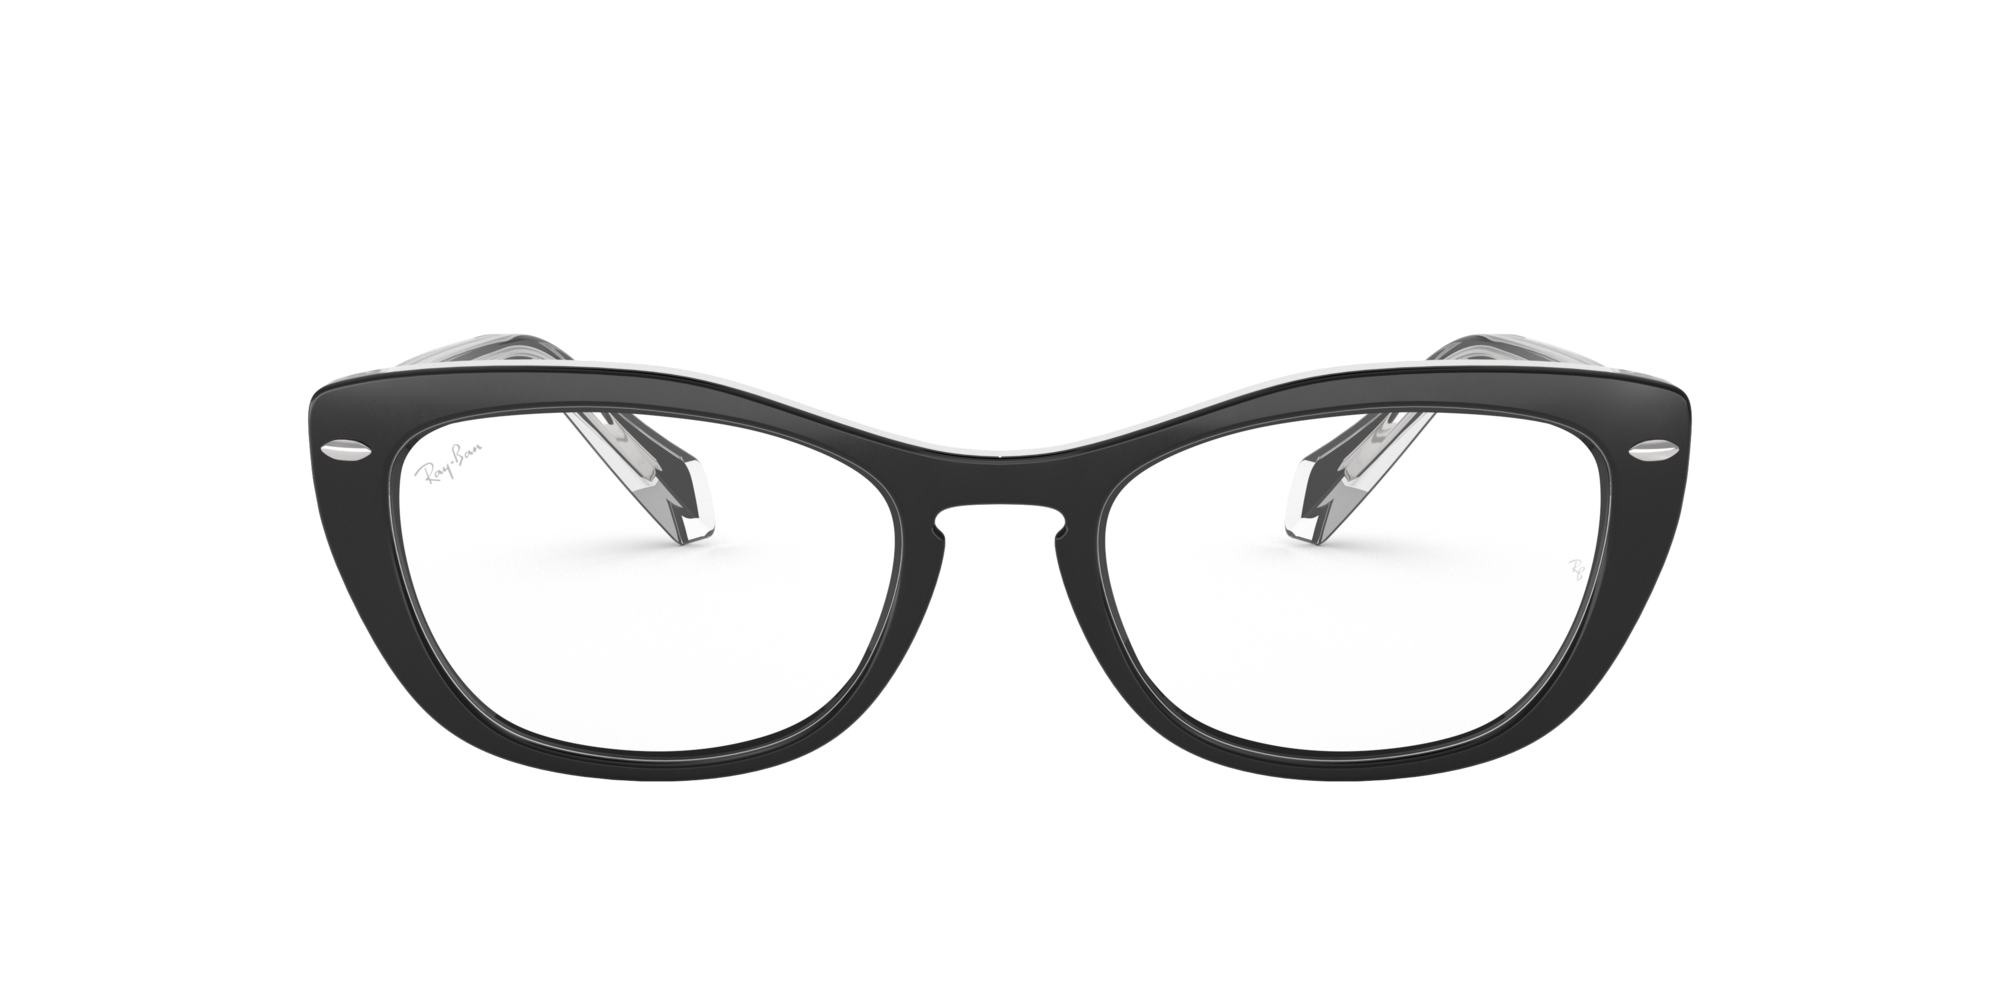 cat eye prescription glasses online